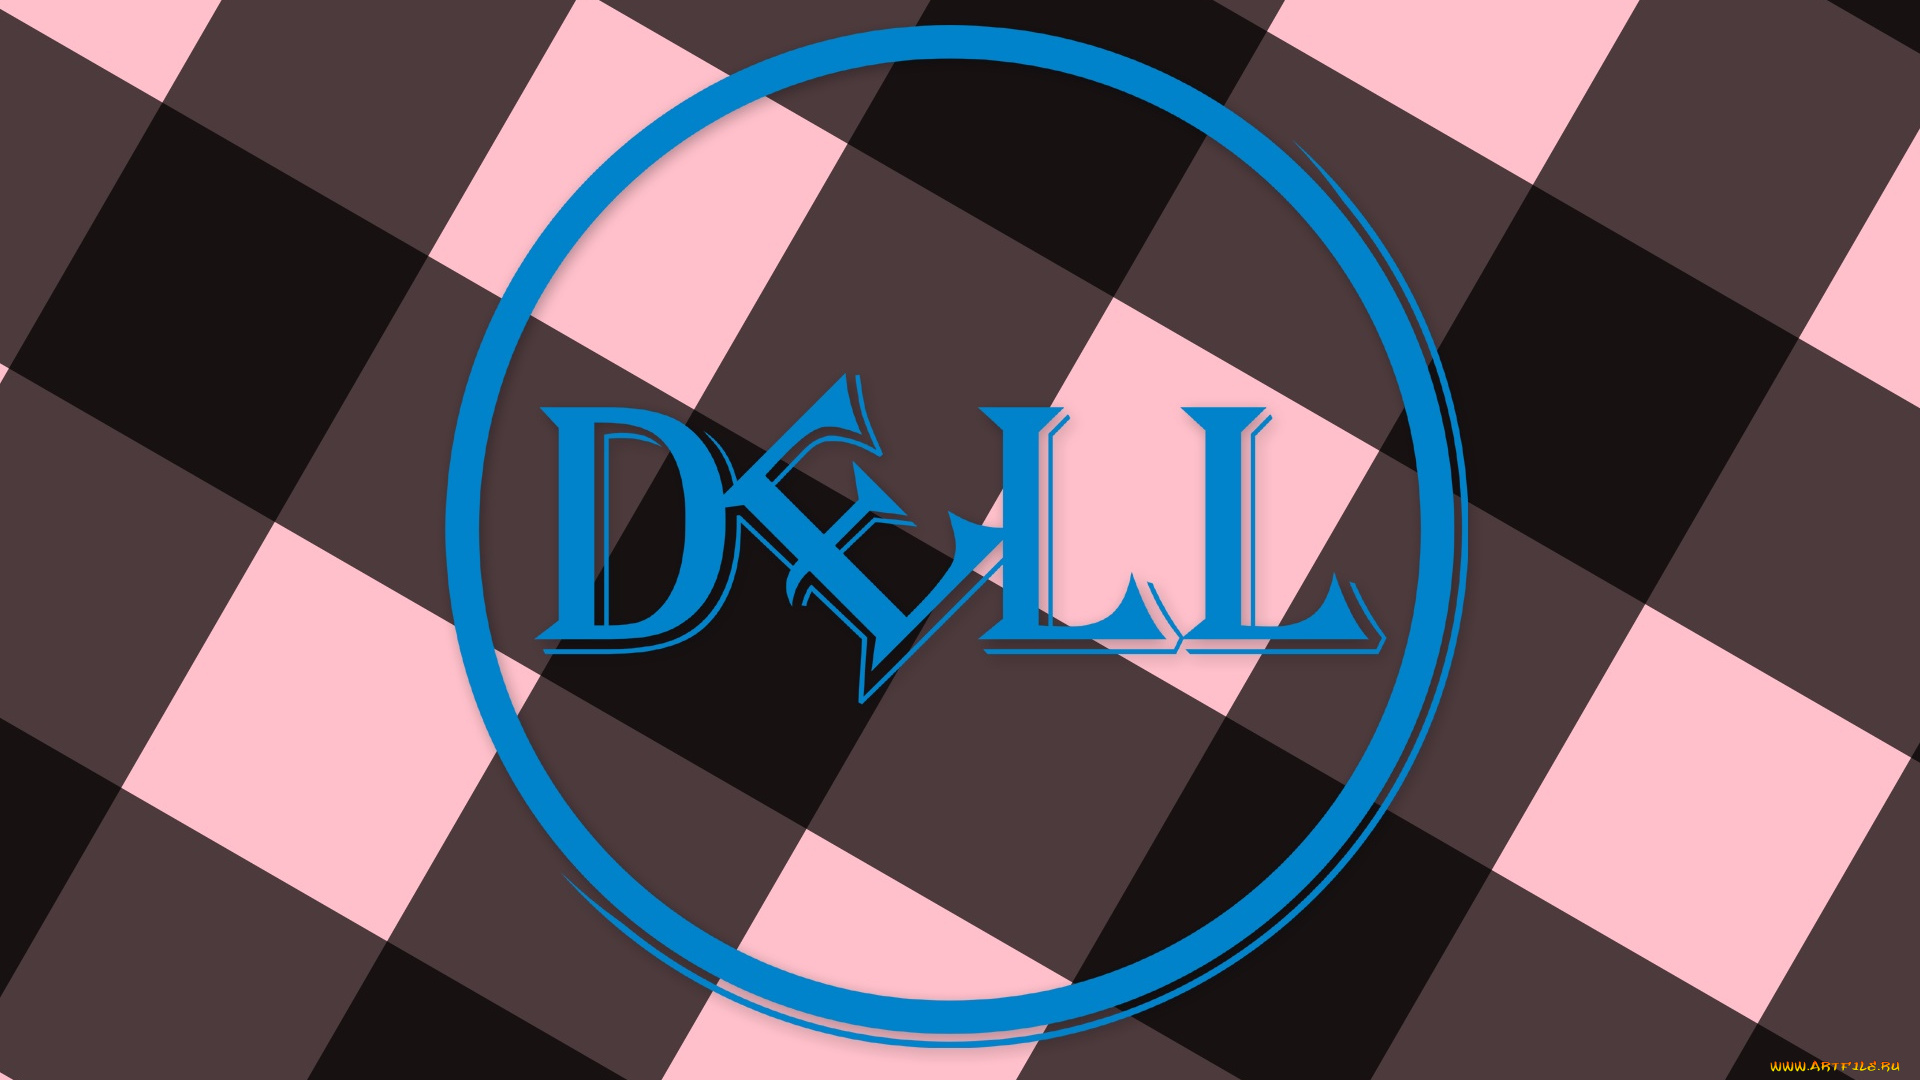 компьютеры, dell, фон, логотип